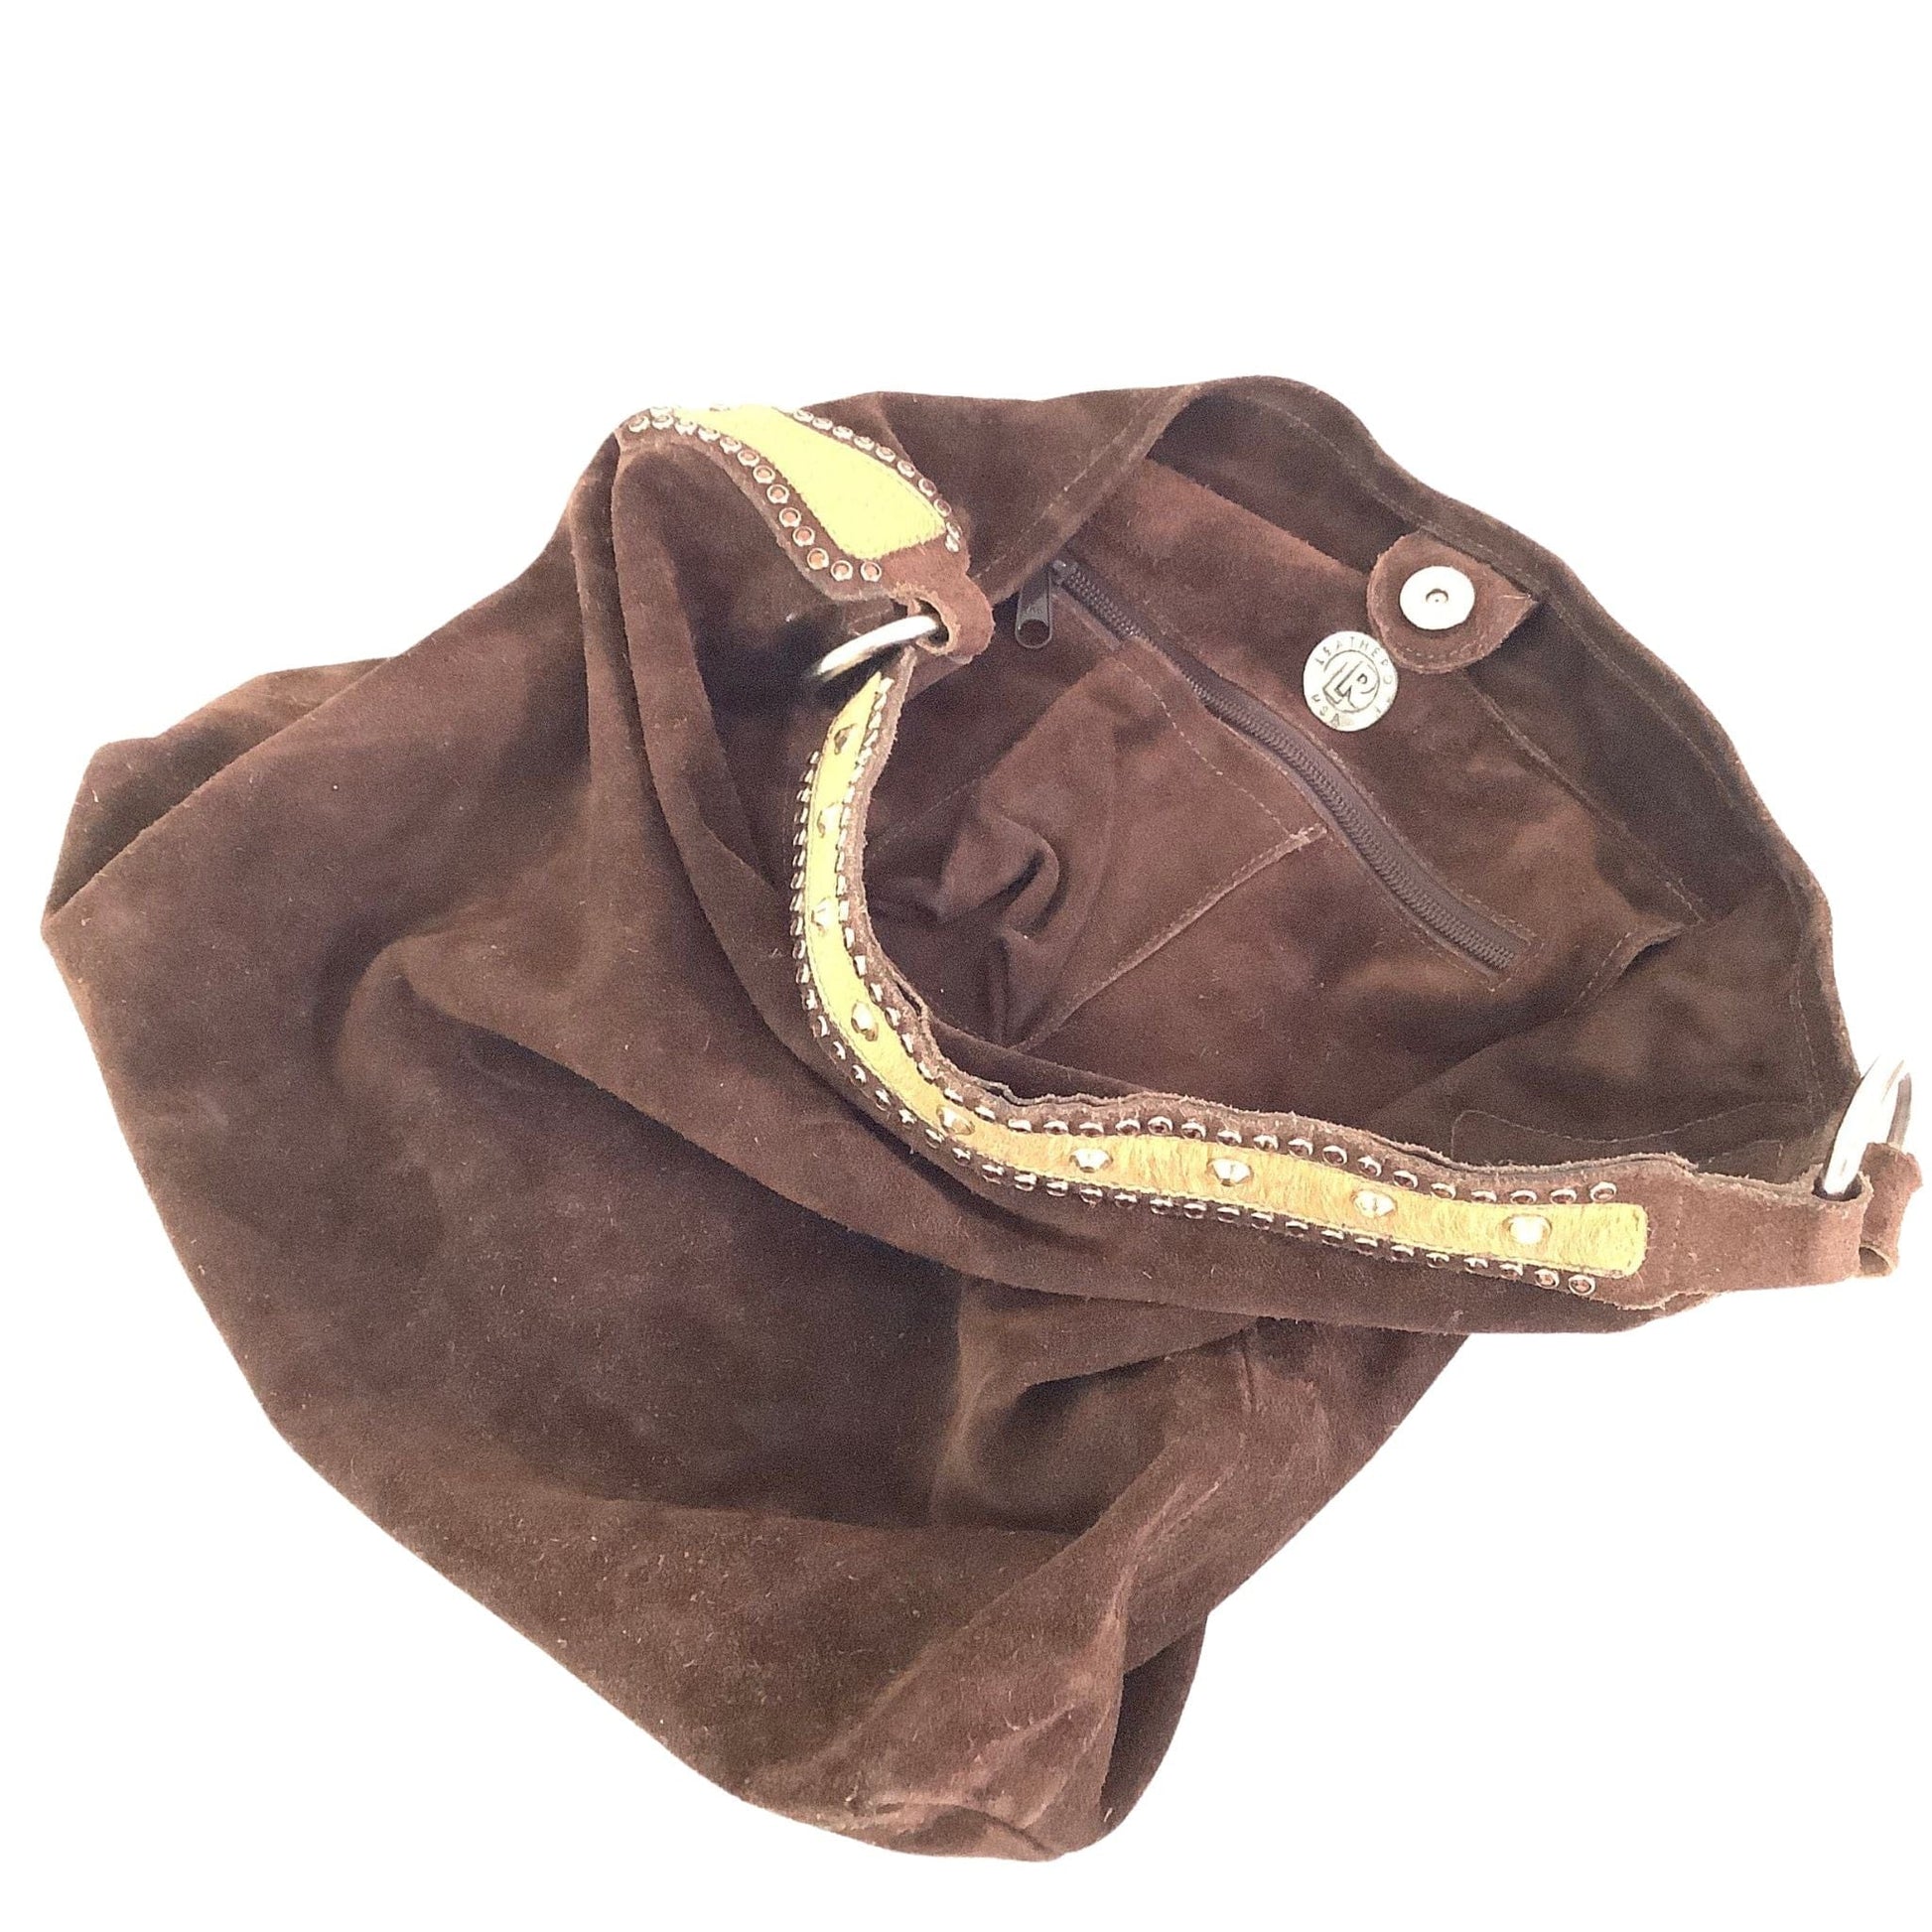 Leatherock Western Bag Brown / Leather / Vintage 1980s